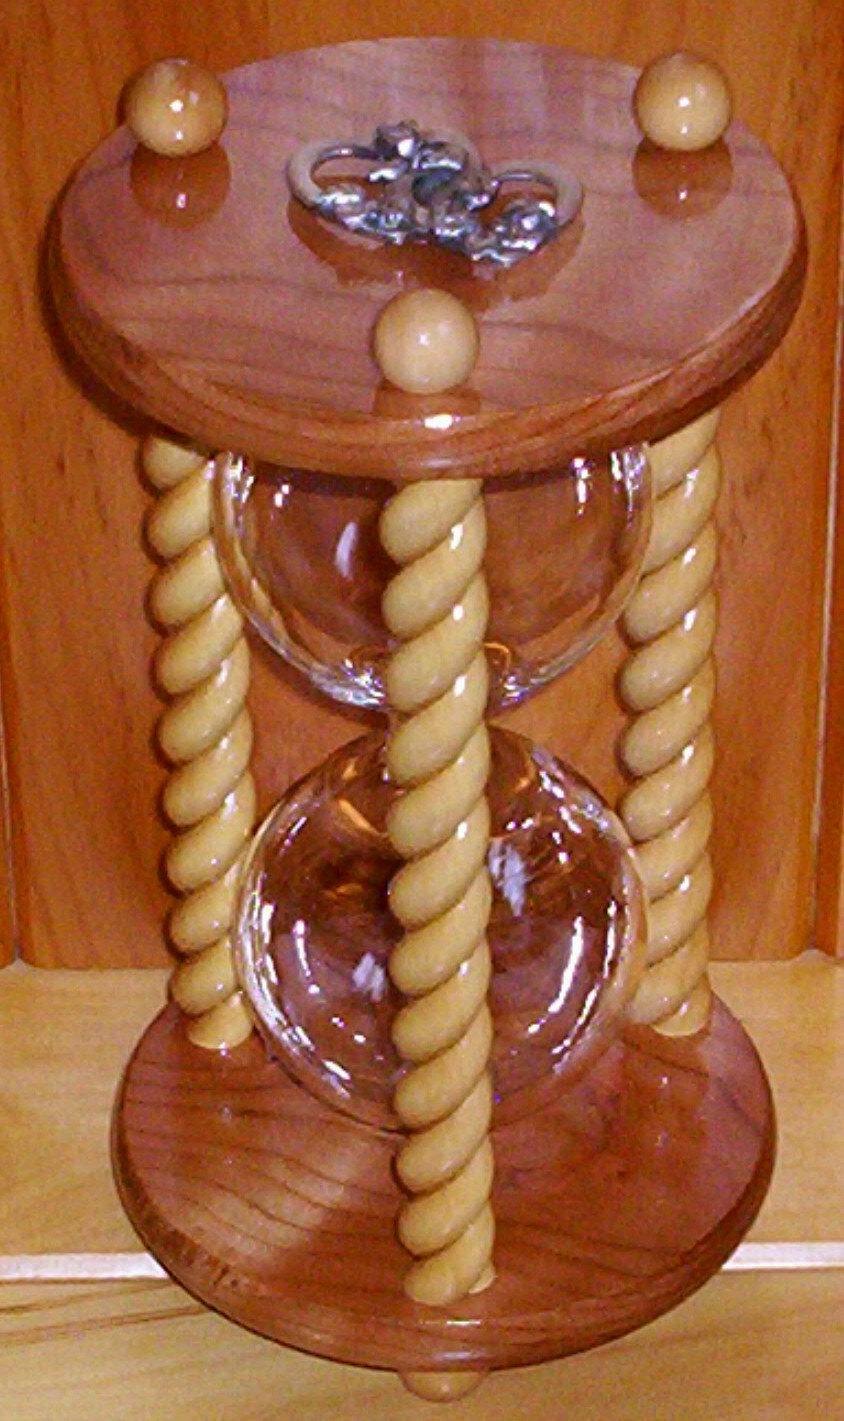 Свадьба - Unity Hourglass - The Honeymoon Cherry and Maple Wedding Unity Sand Ceremony Hourglass by Heirloom Hourglass - The Original Unity Hourglass